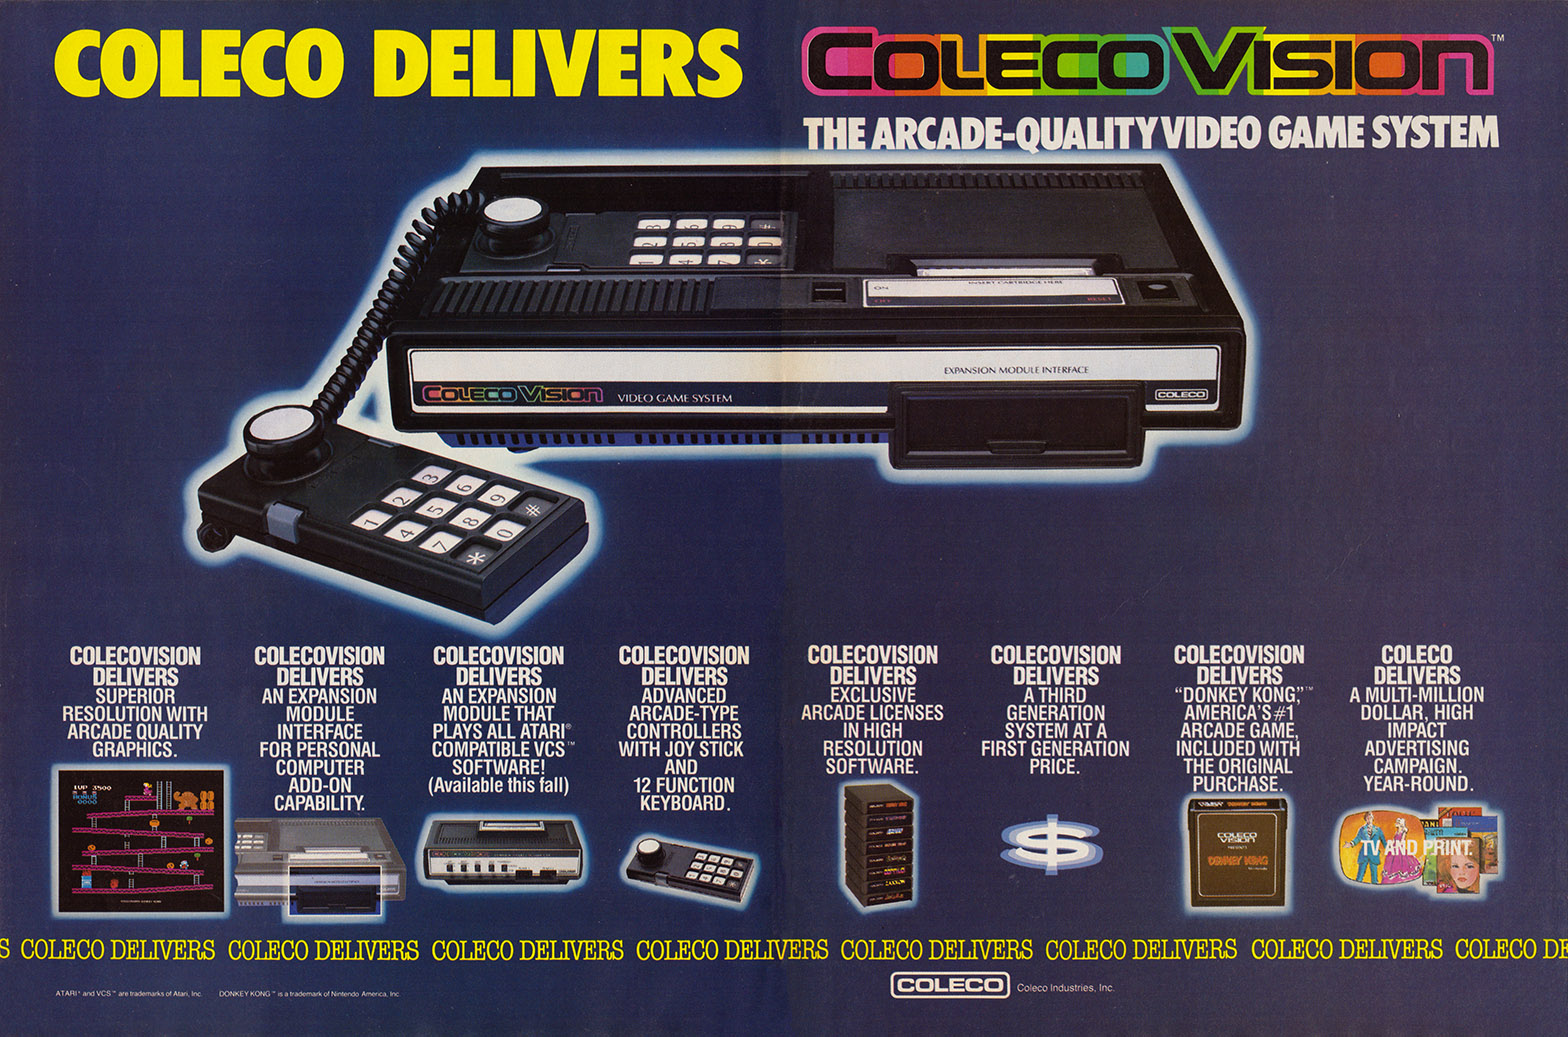 Console: ColecoVision